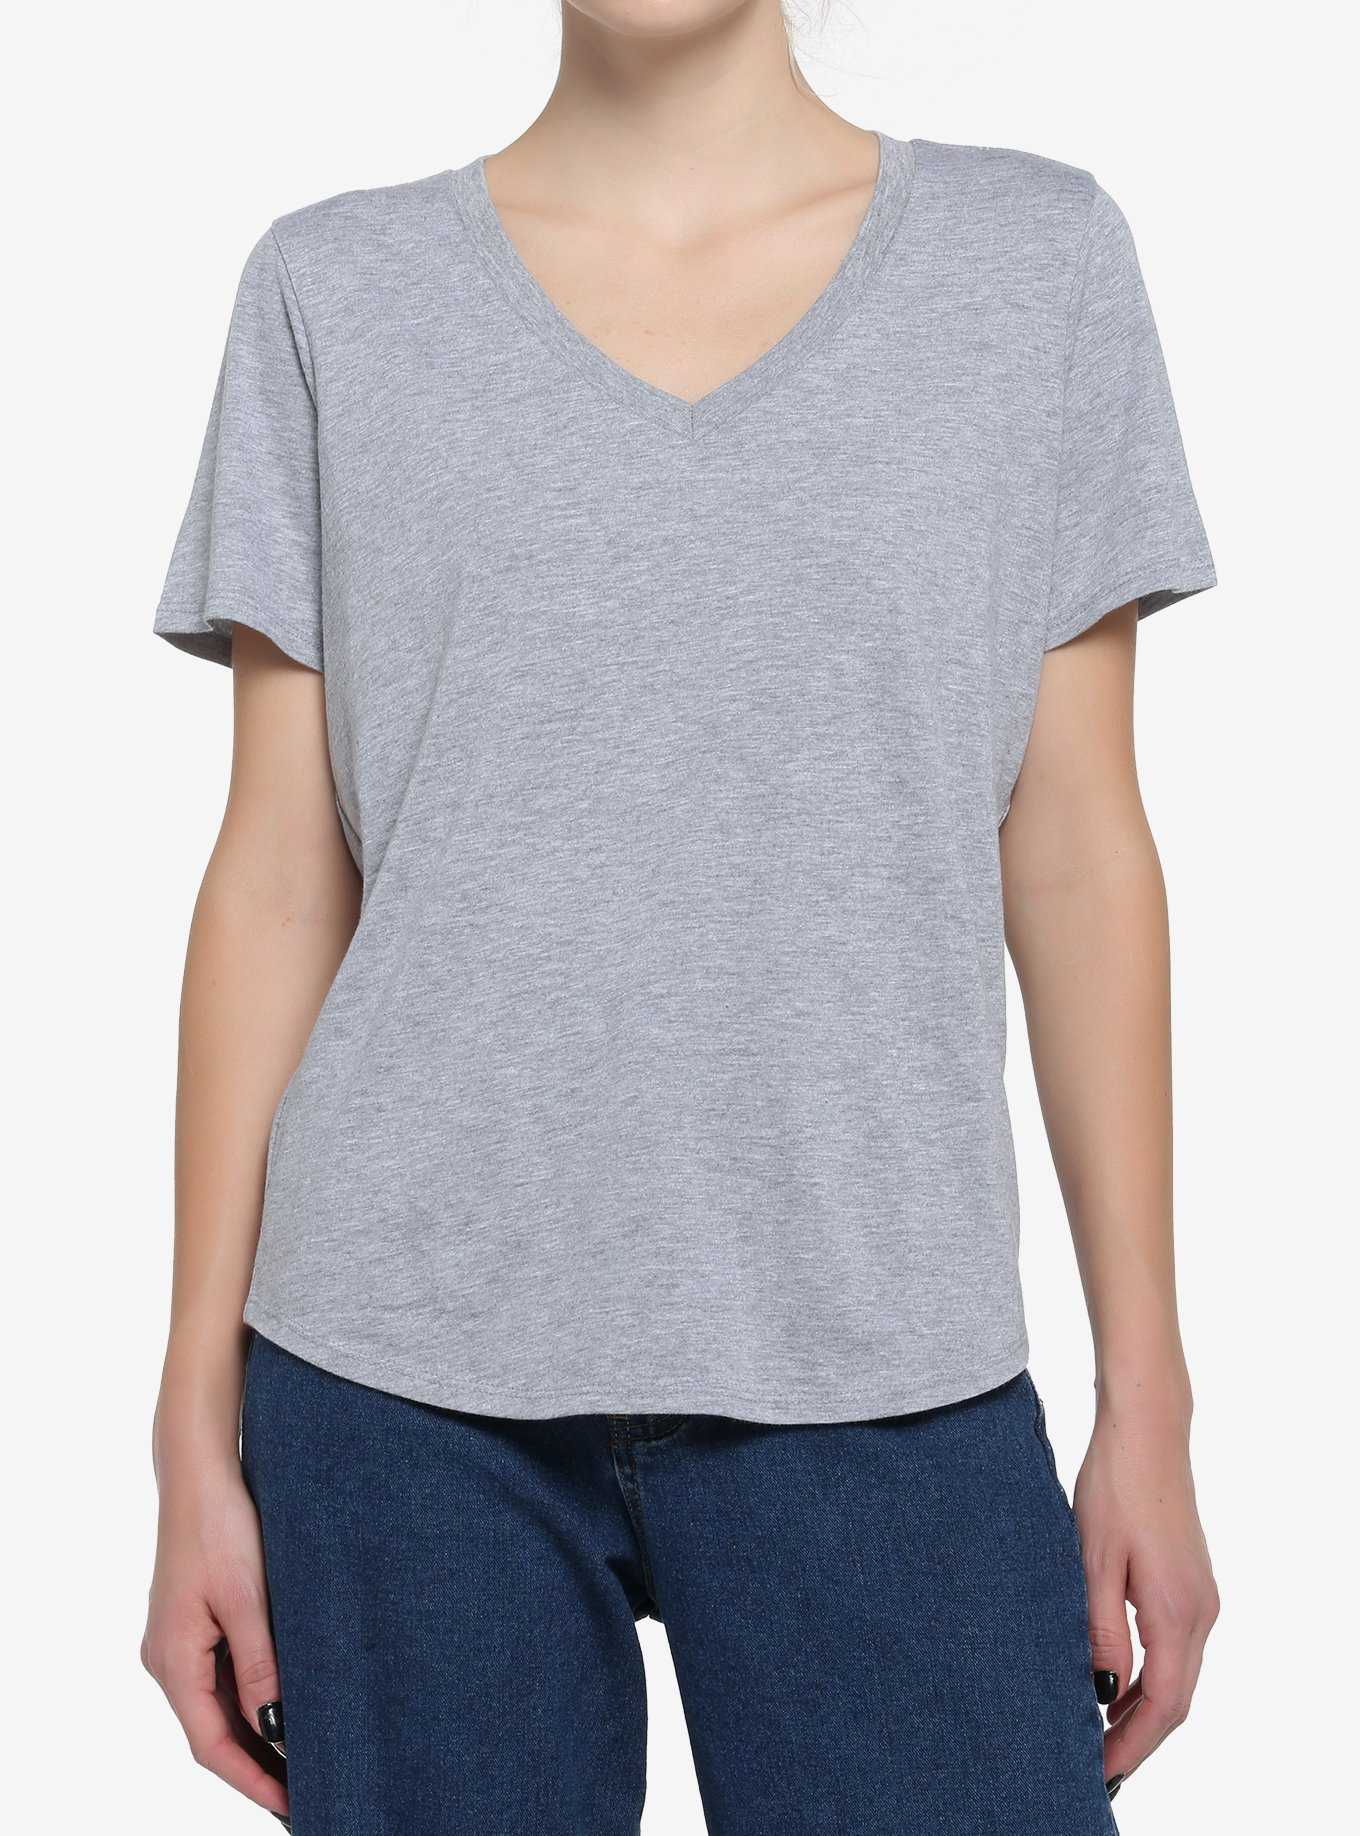 Her Universe Heather Grey V-Neck Favorite T-Shirt, , hi-res